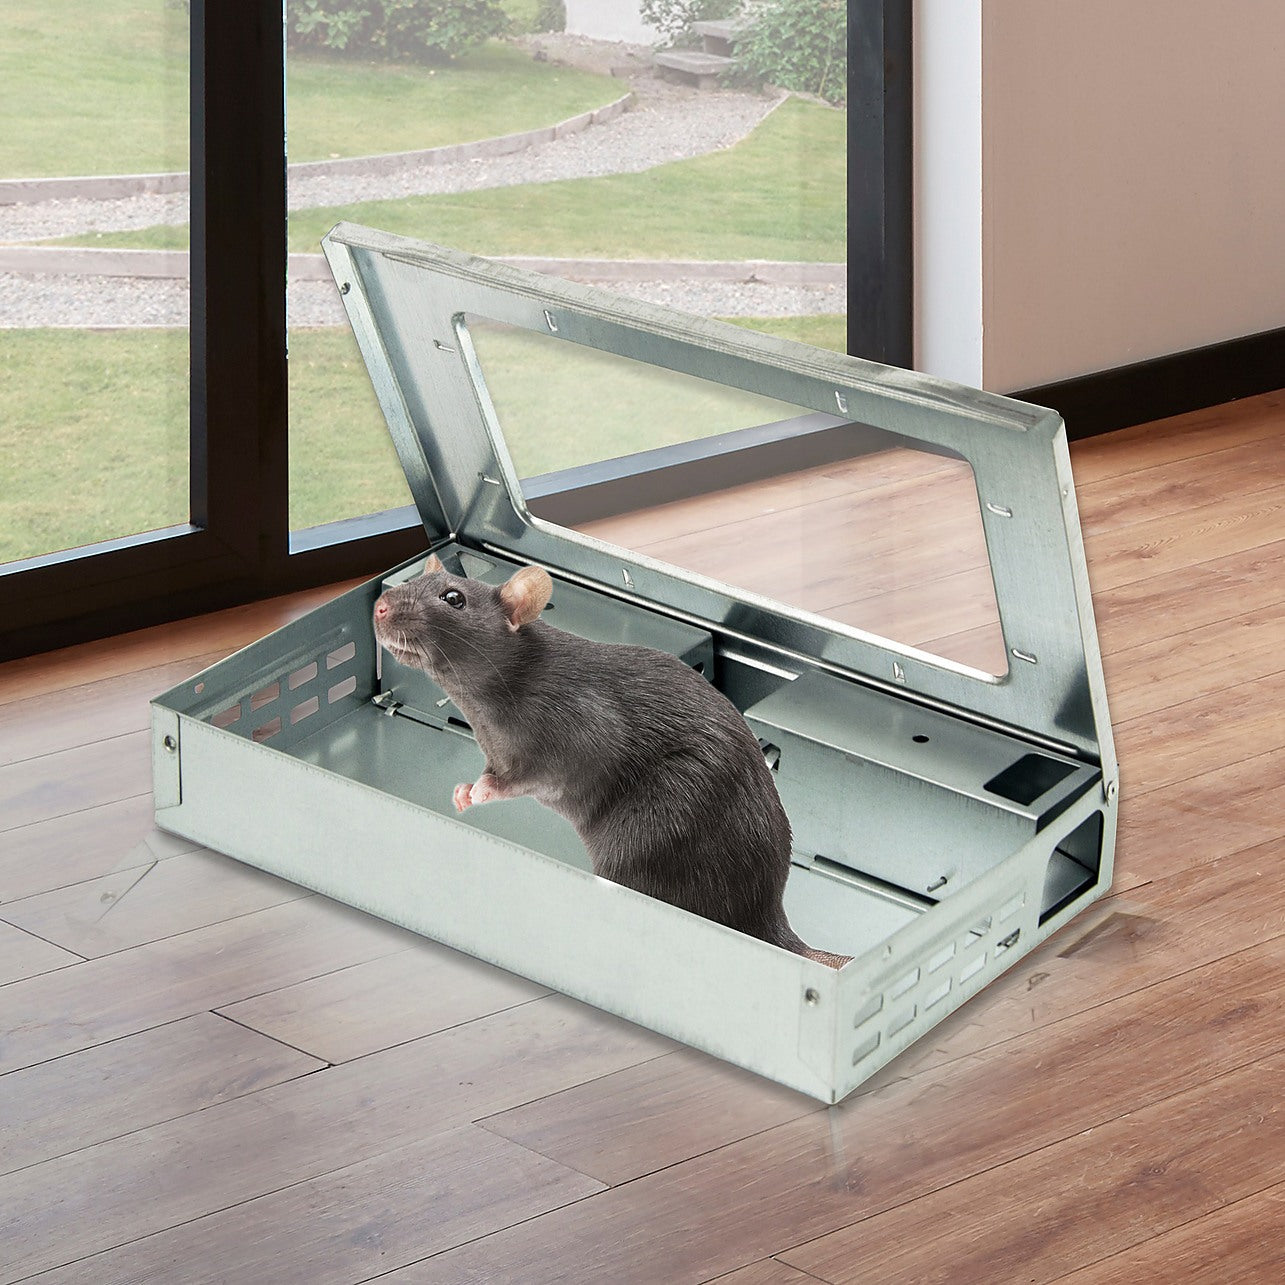 Dropship Humane Bucket Lid Mouse Trap Rat Catcher Reusable Slide